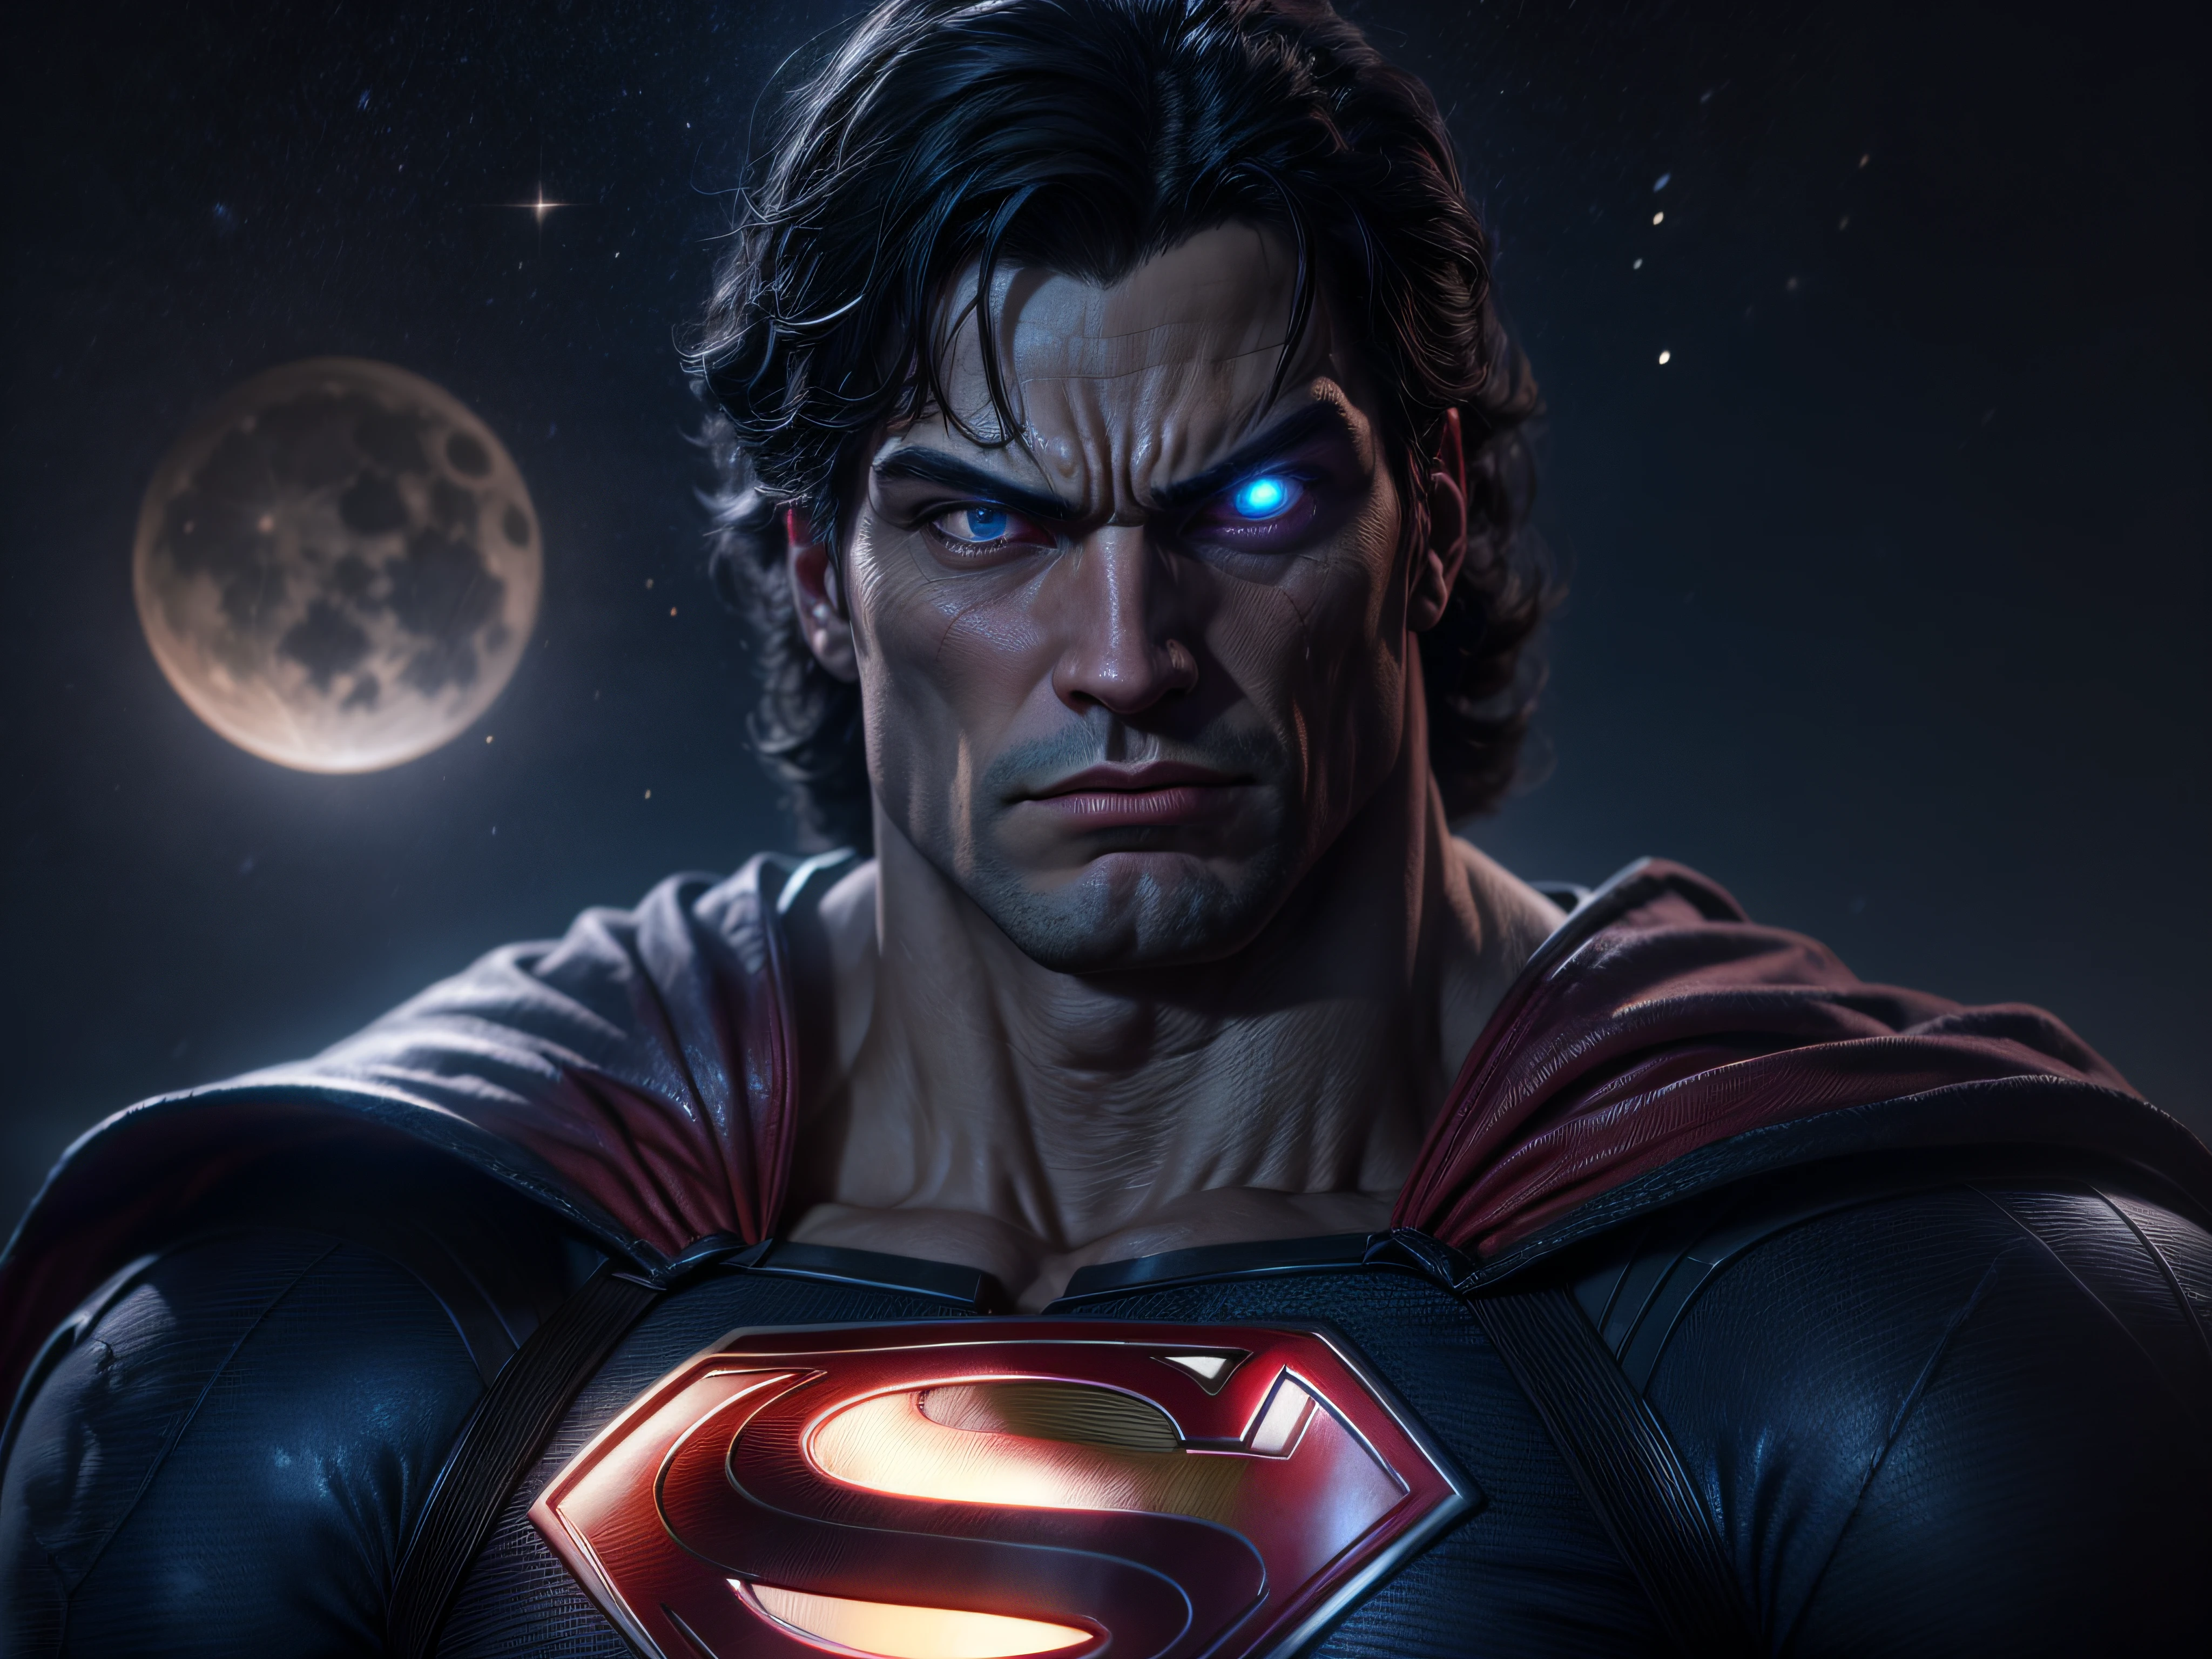 Cerrar una poderosa amenaza, La imponente apariencia de Superman, mirada amenazadora, ricamente detallado, Hiper realista, renderizado 3D, obra-prima, NVIDIA, RTX, trazado de rayos, bokeh, Cielo nocturno con una enorme y hermosa luna llena., estrellas brillantes,